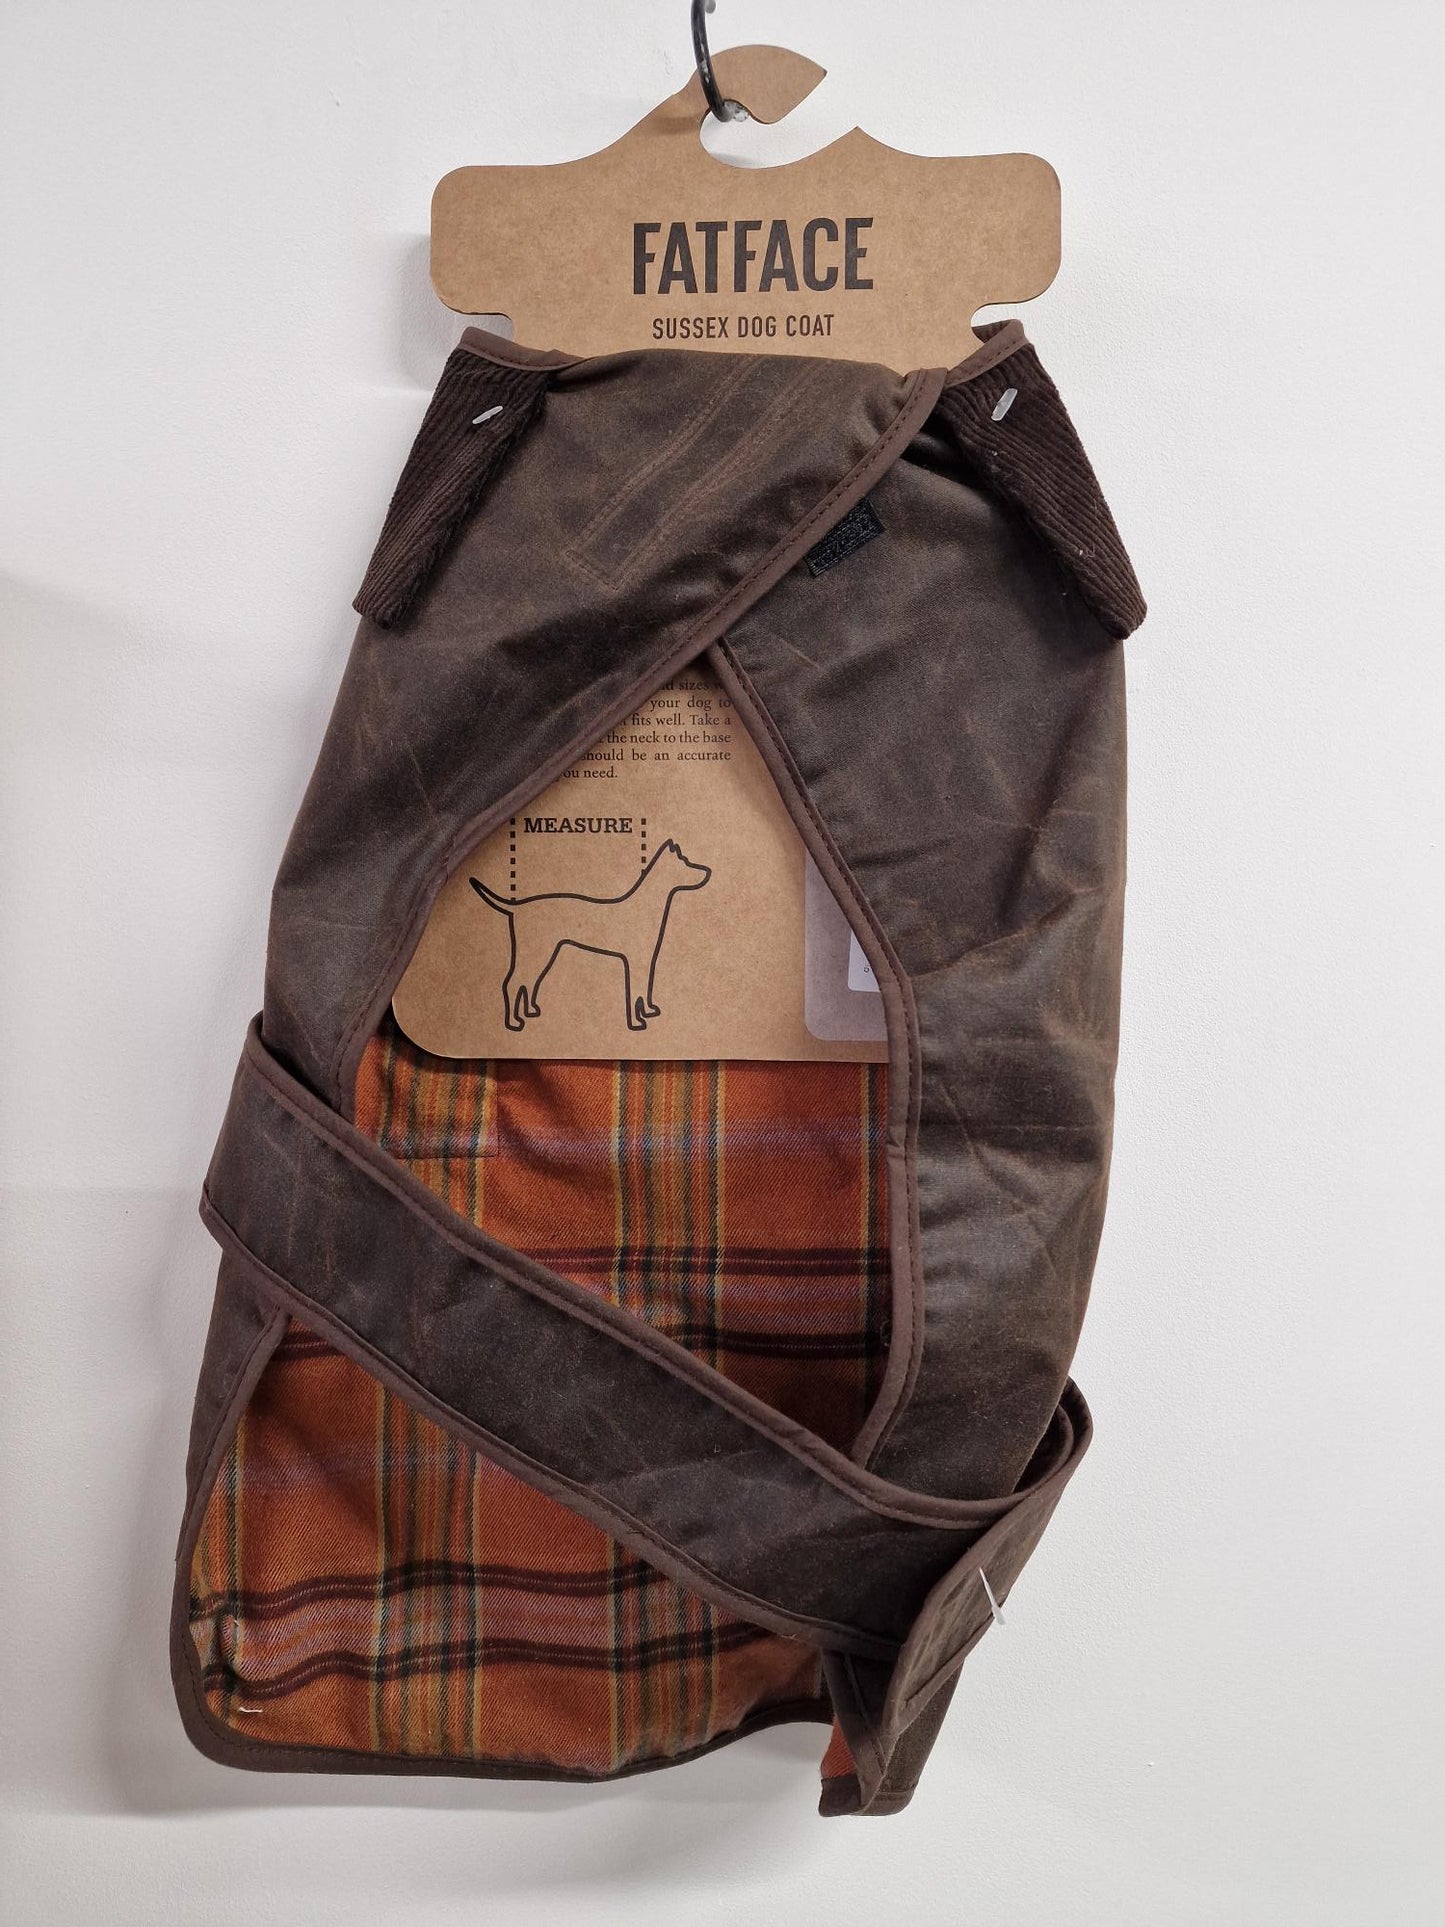 FATFACE Designer Sussex Dog Coat